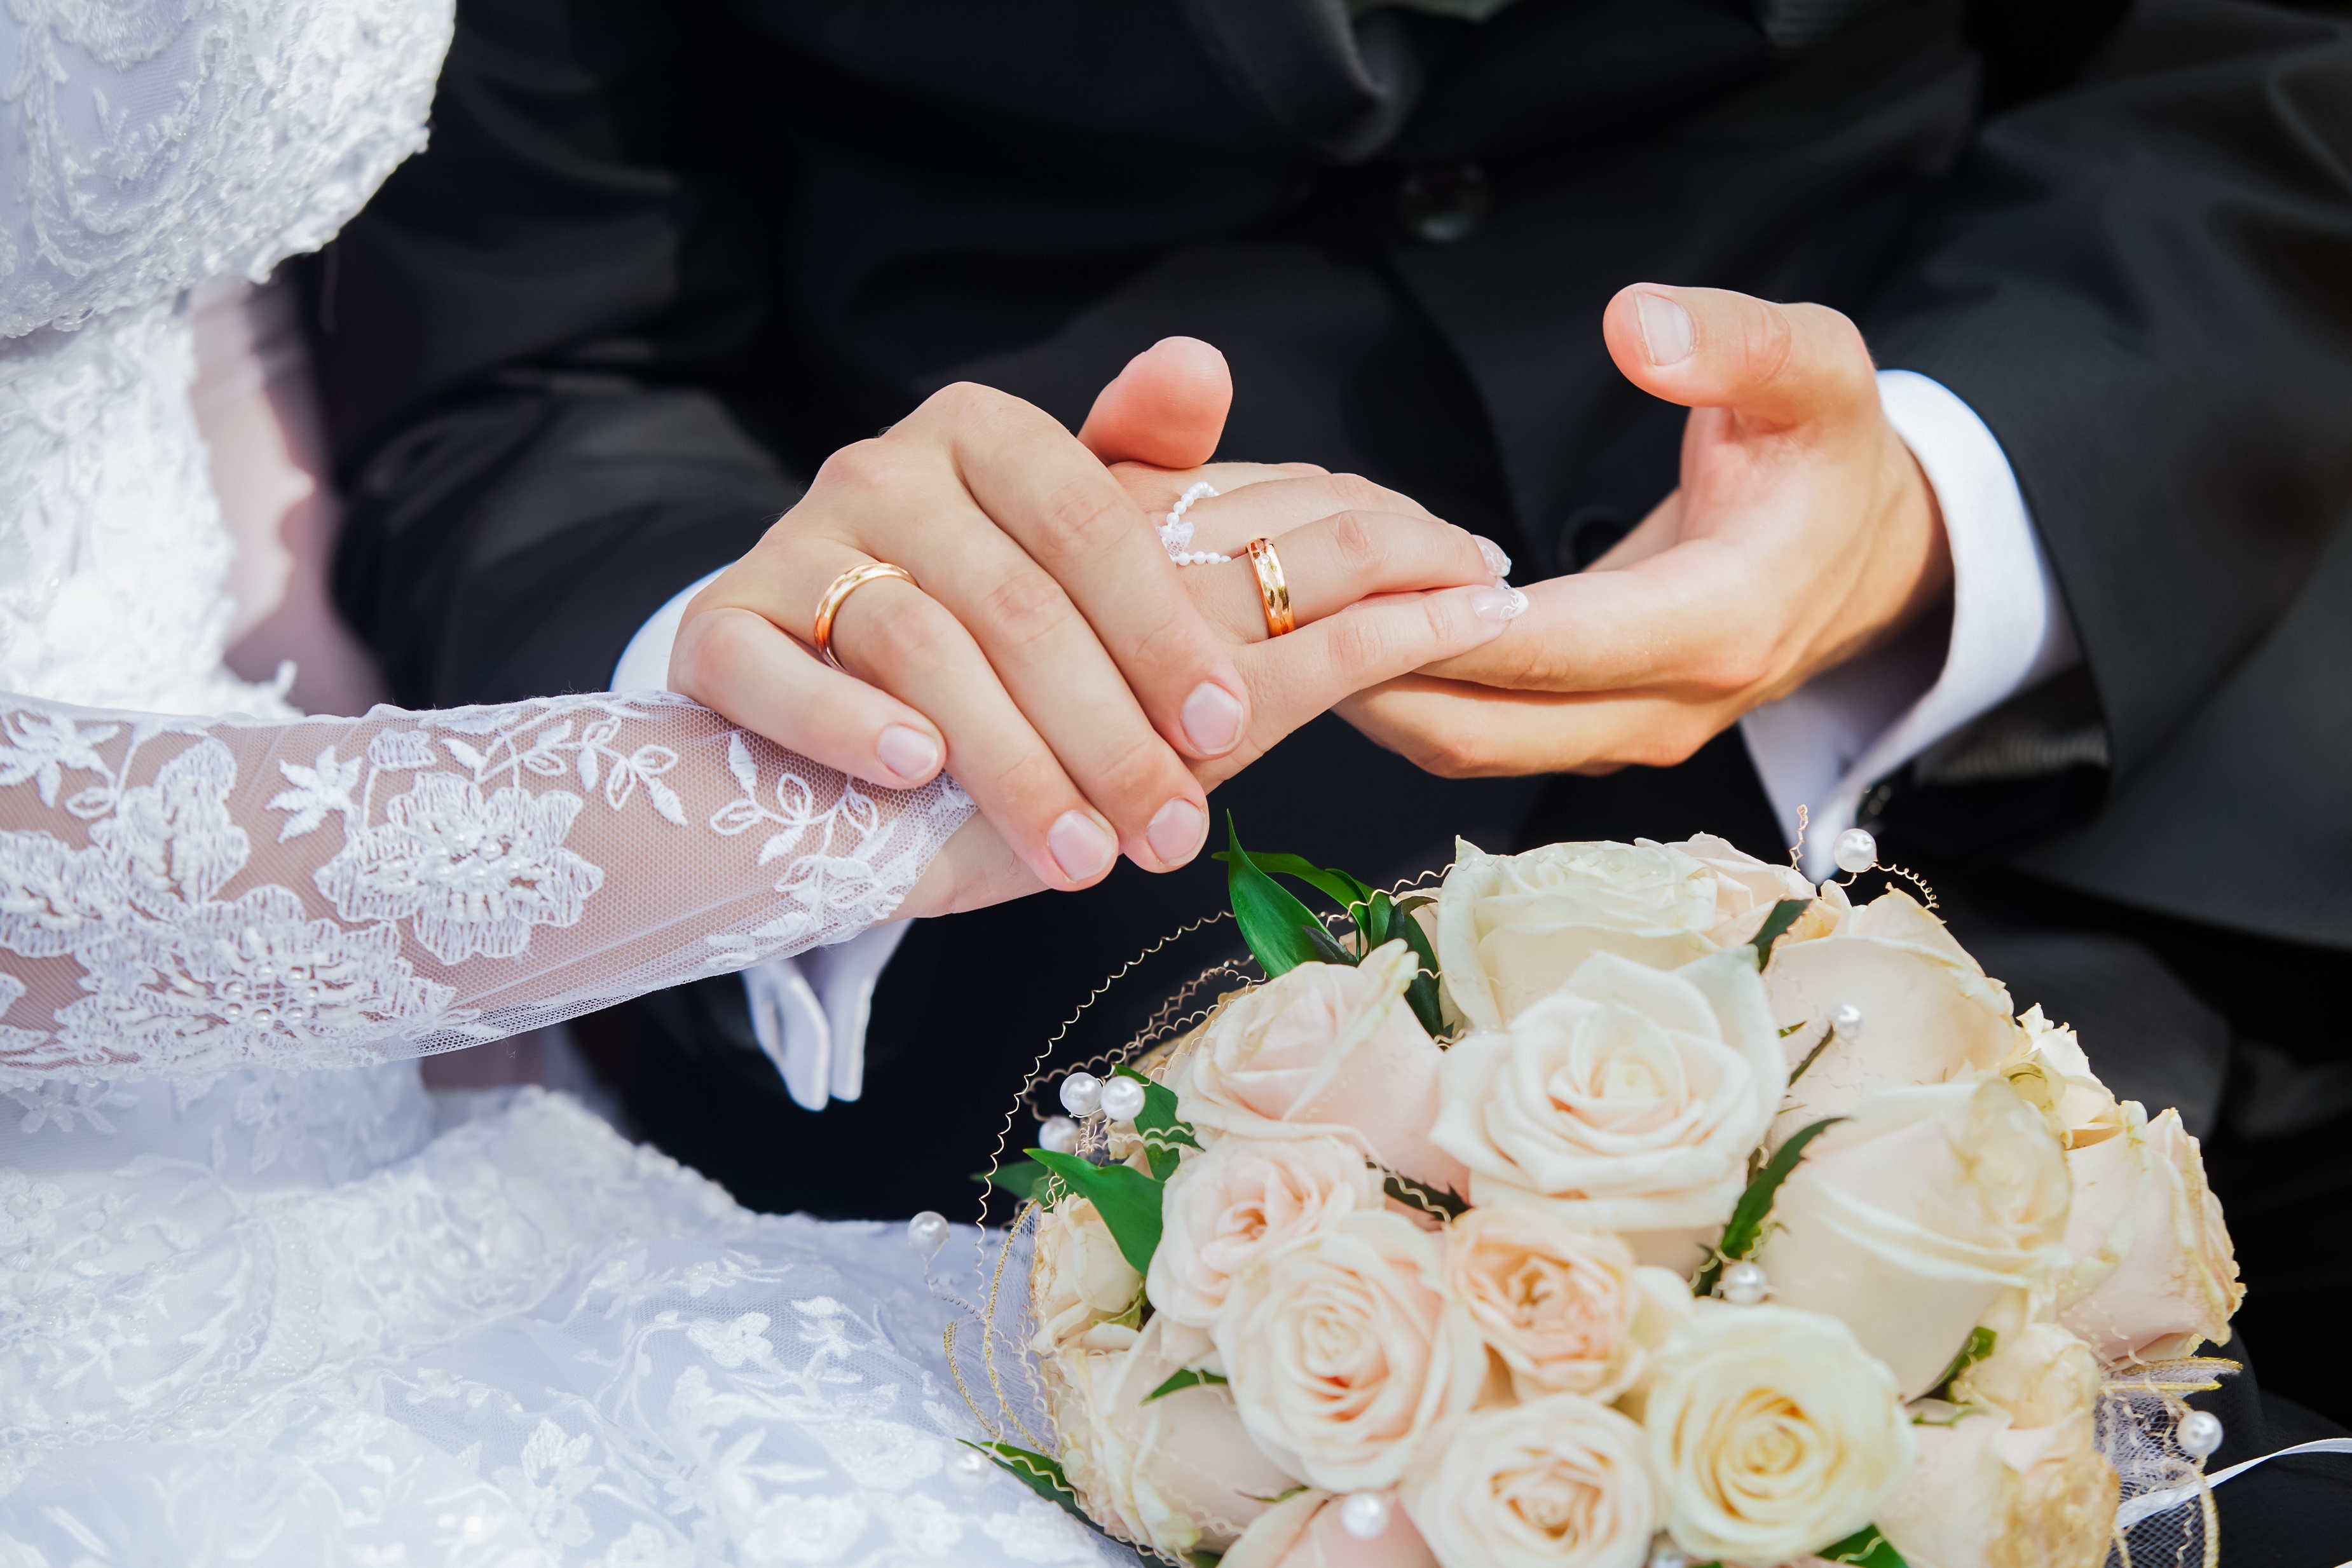 Красивые даты для брака. Никох узук. Никох узук расм. Кольца жениха и невесты. Невеста на руках у жениха.